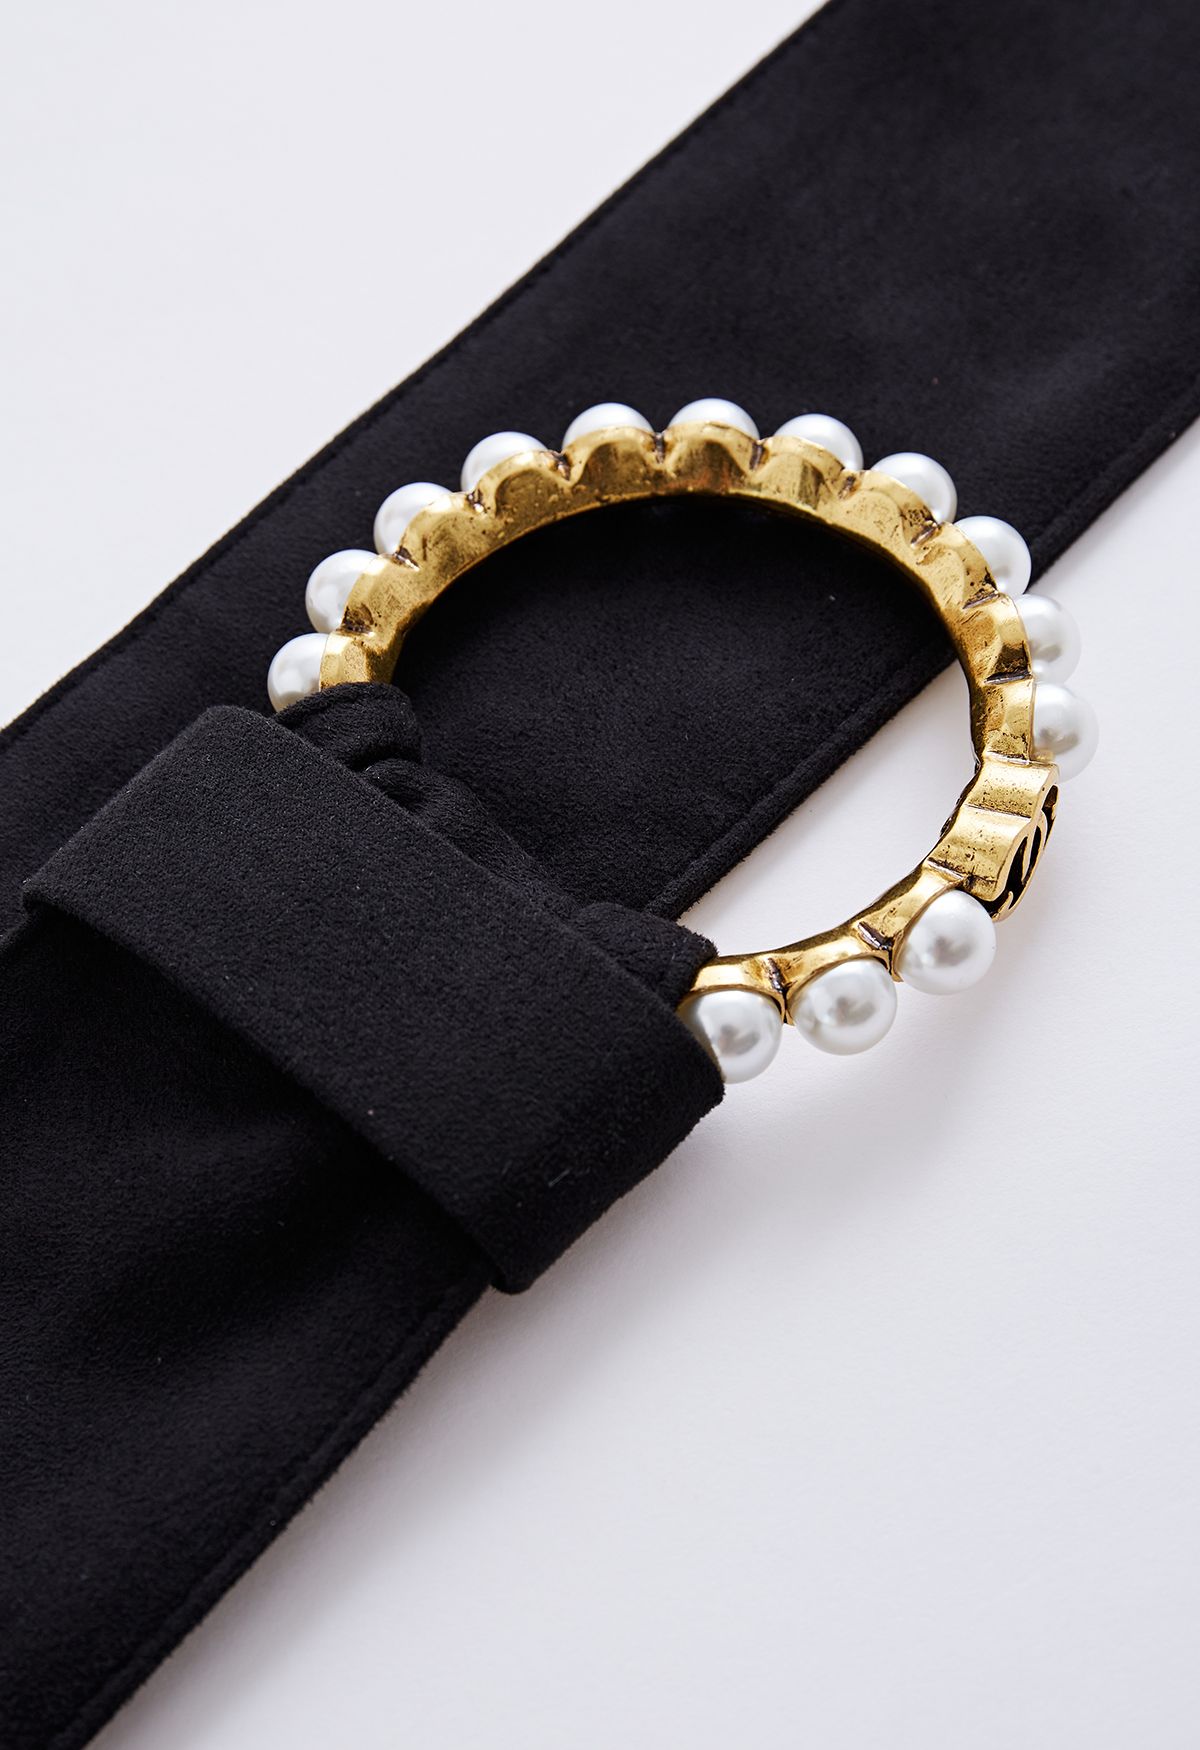 Cinturón de terciopelo con junta tórica y ribete de perla en negro